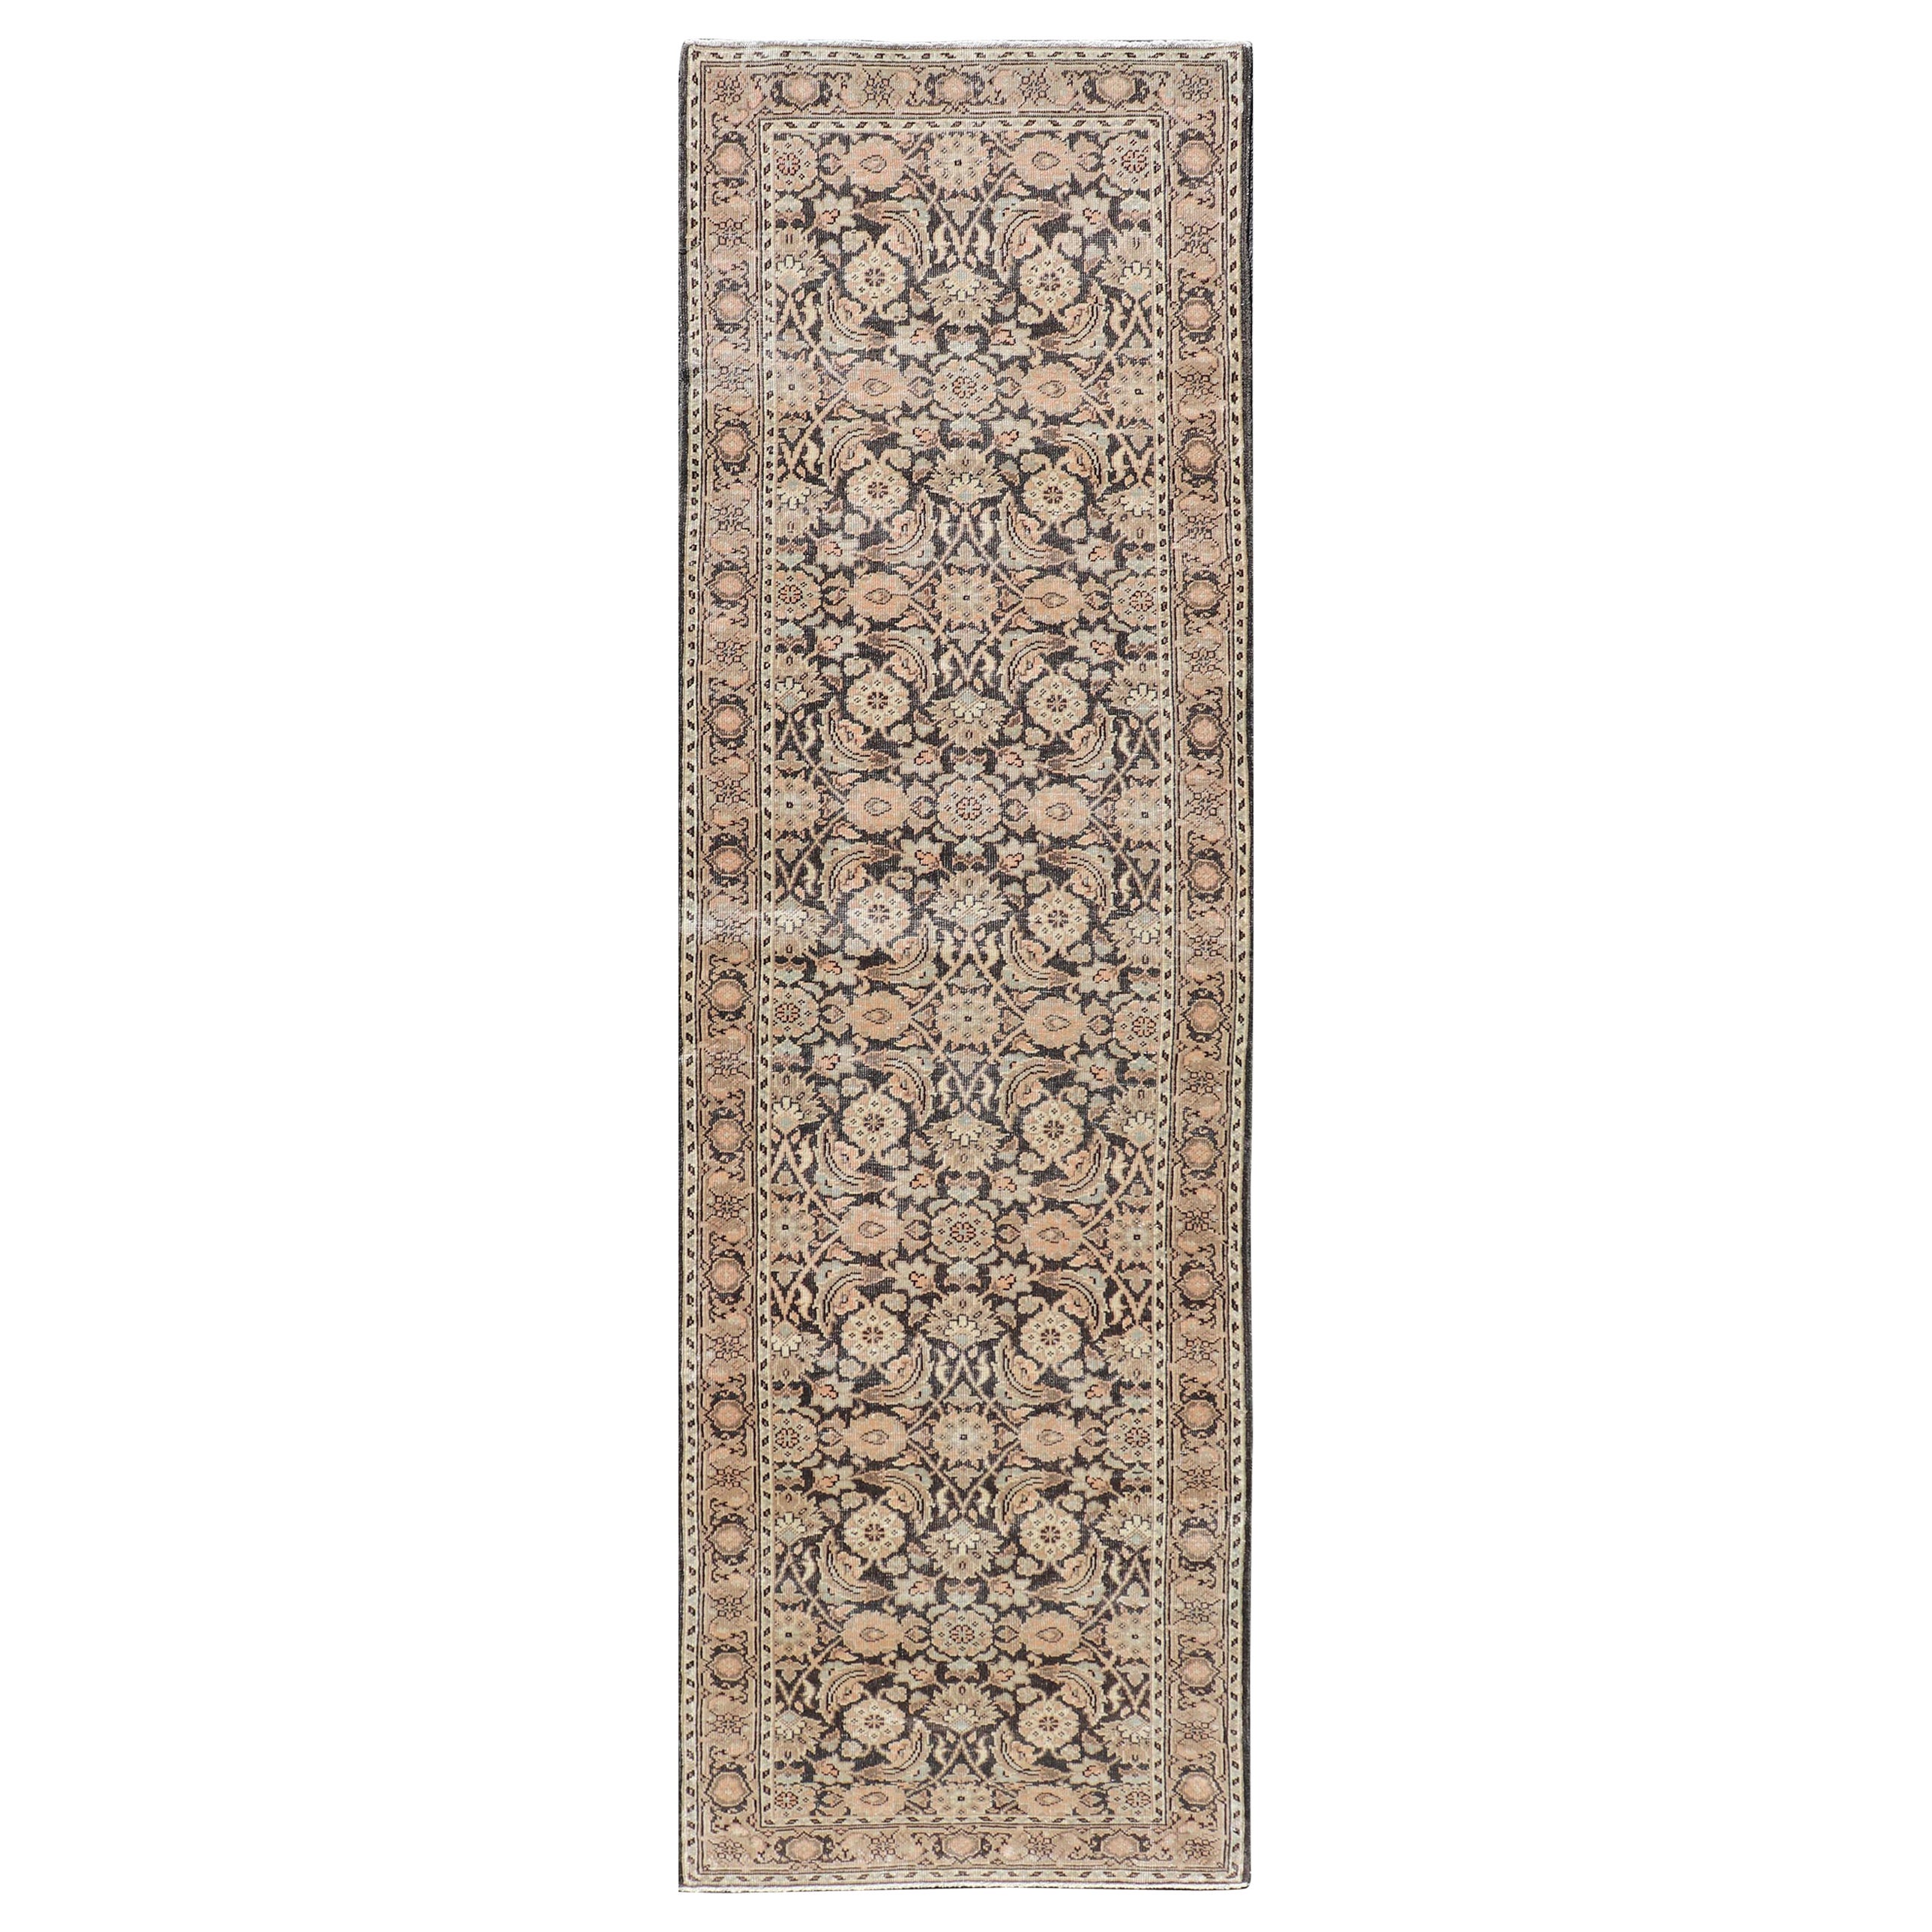 Tapis de couloir persan ancien de Tabriz avec motif floral orné dans des tons terreux 